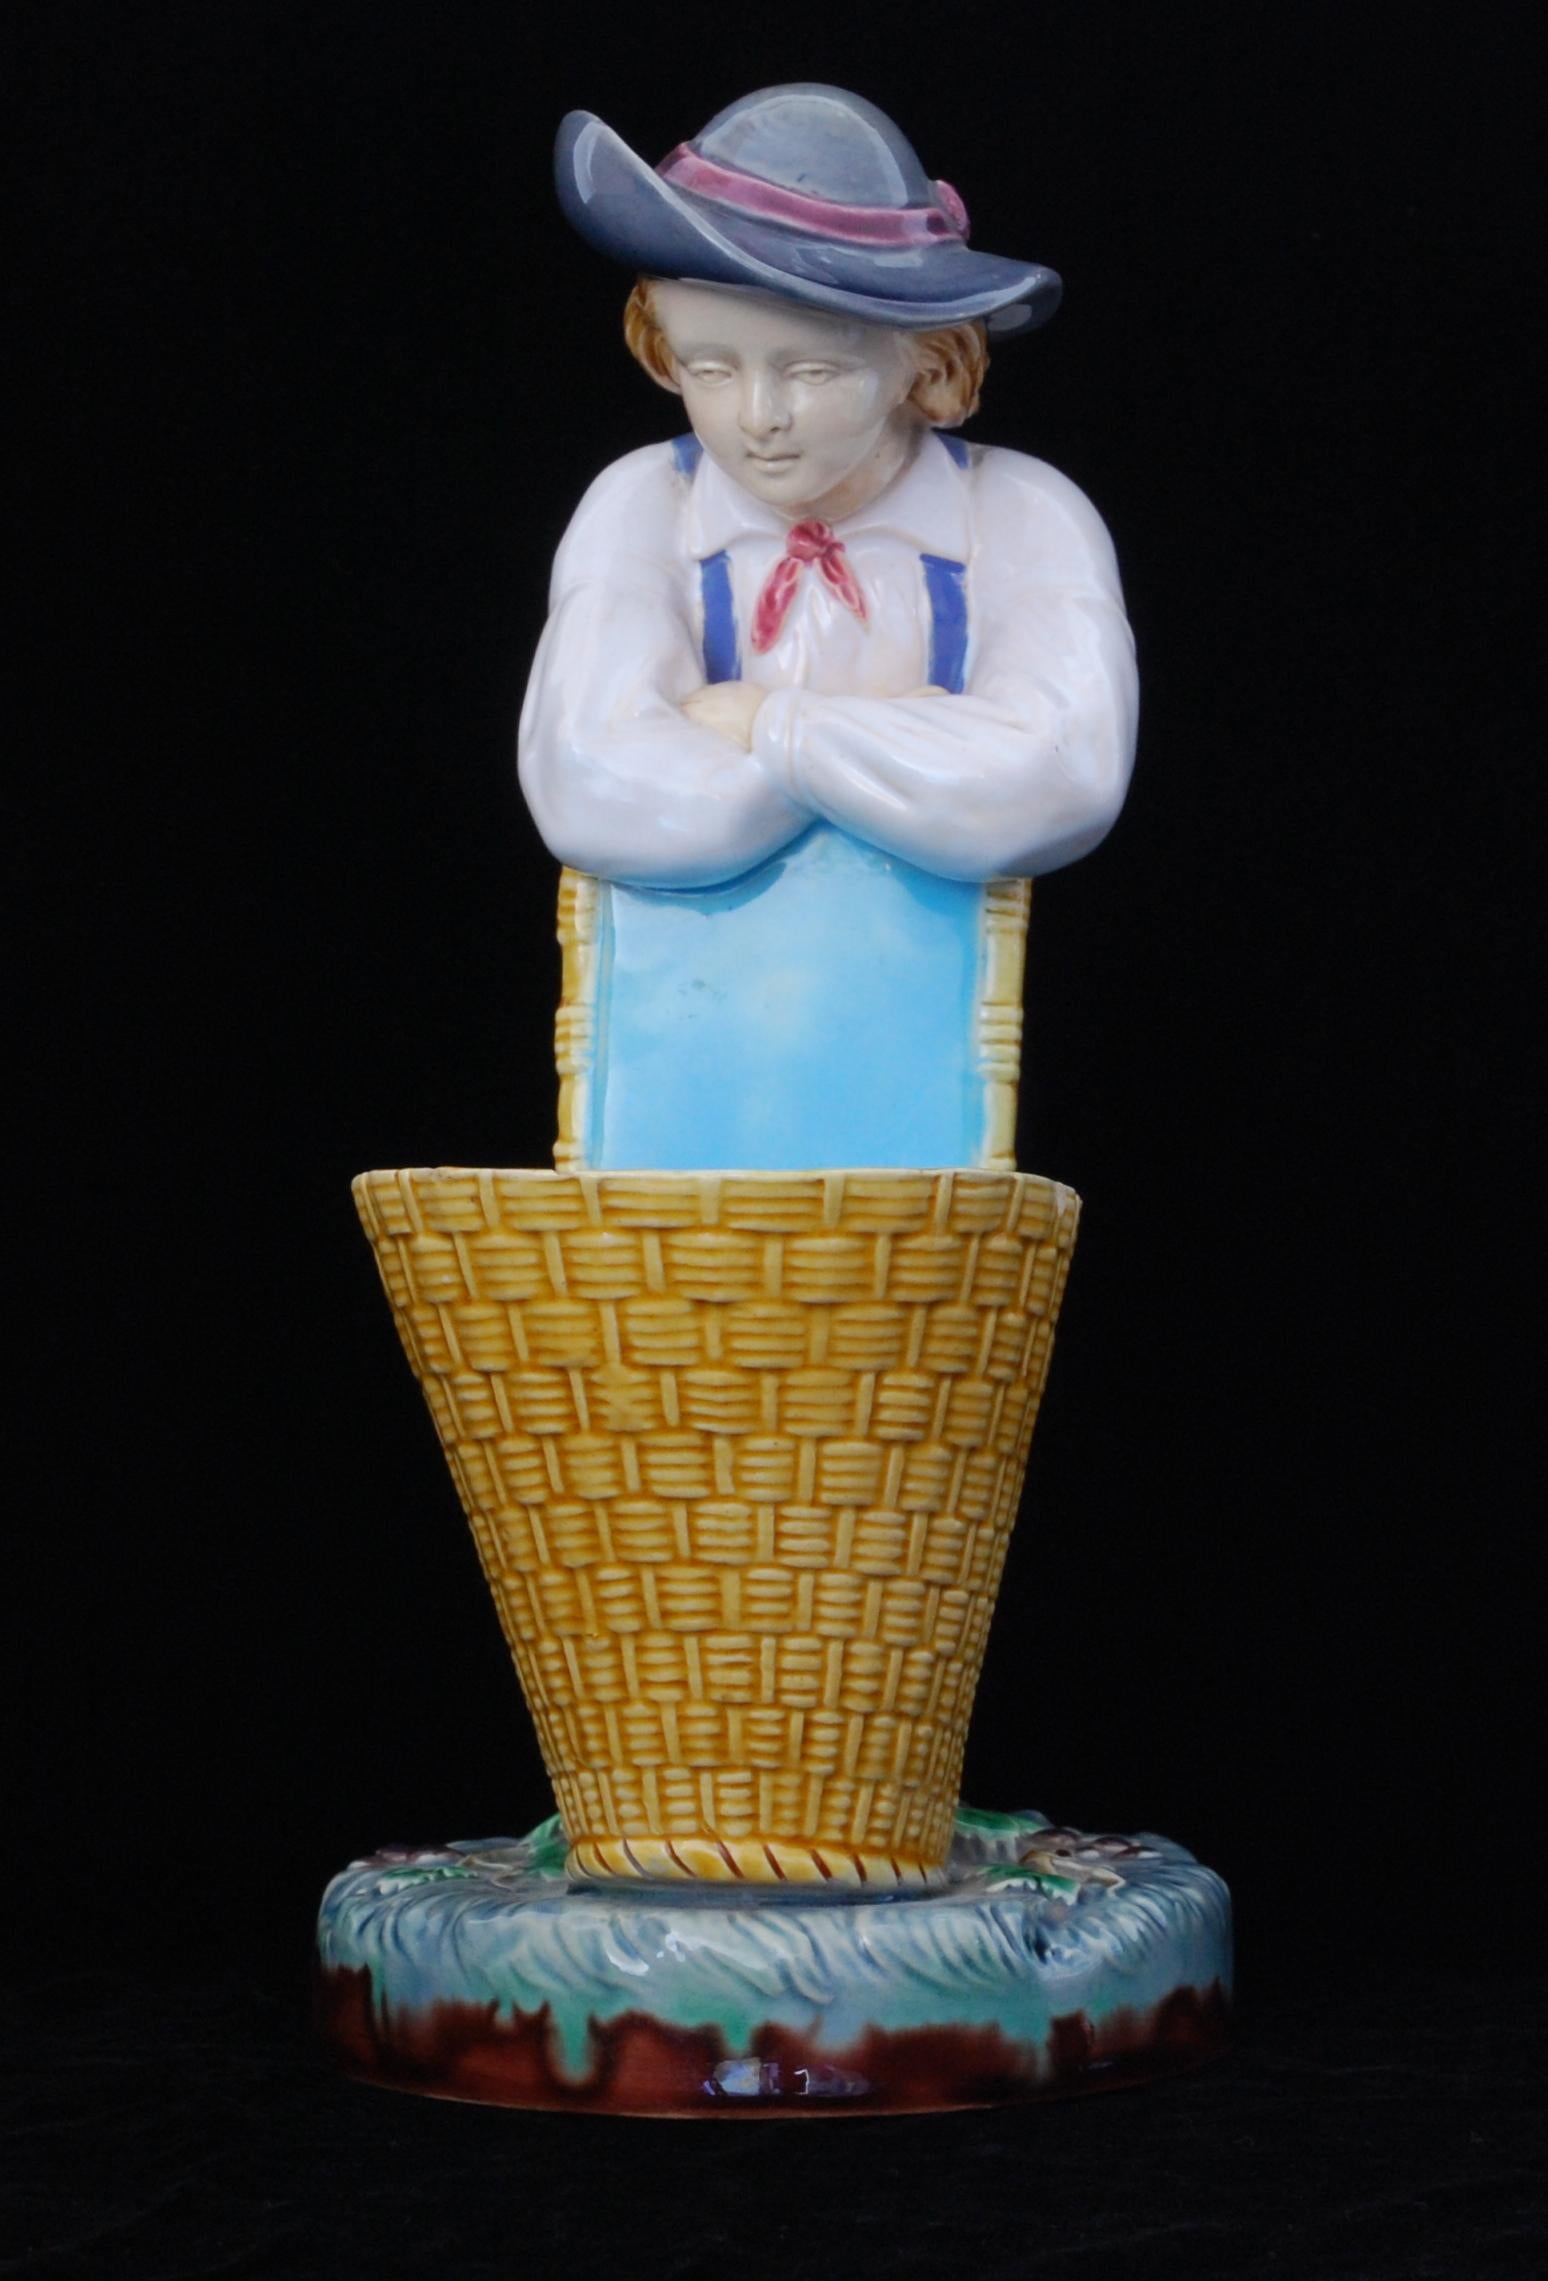 Eine farbenfrohe Majolika-Süßspeisenschale in Form eines jungen Mannes, der sich auf einen Korb stützt.

Minton Majolika ist eine Art von Keramik, die im 19. Jahrhundert von der Töpferei Minton hergestellt wurde. Sie entstand als Reaktion auf die